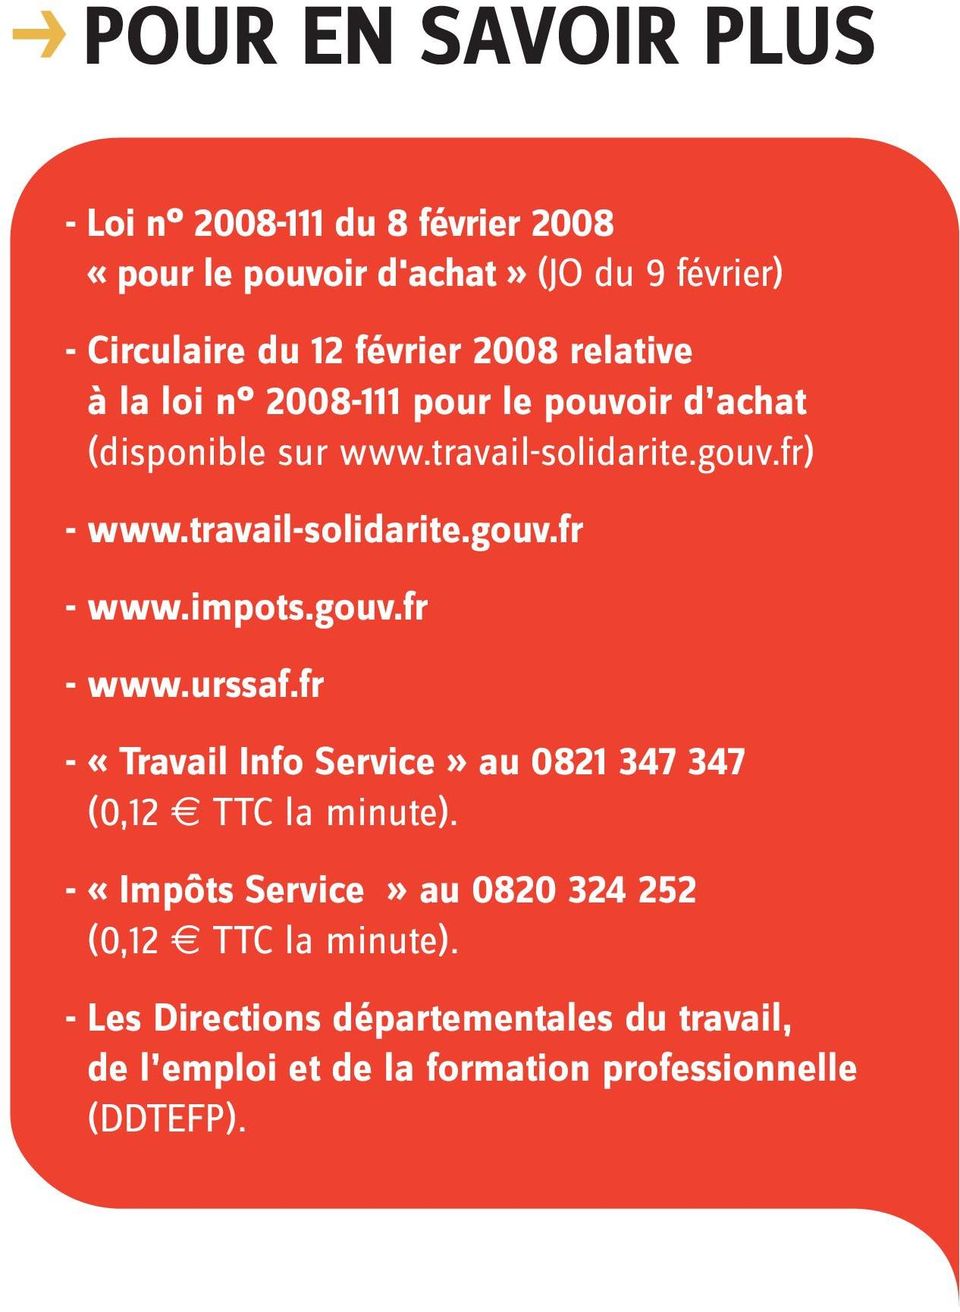 impots.gouv.fr - www.urssaf.fr - «Travail Info Service» au 0821 347 347 (0,12 TTC la minute).